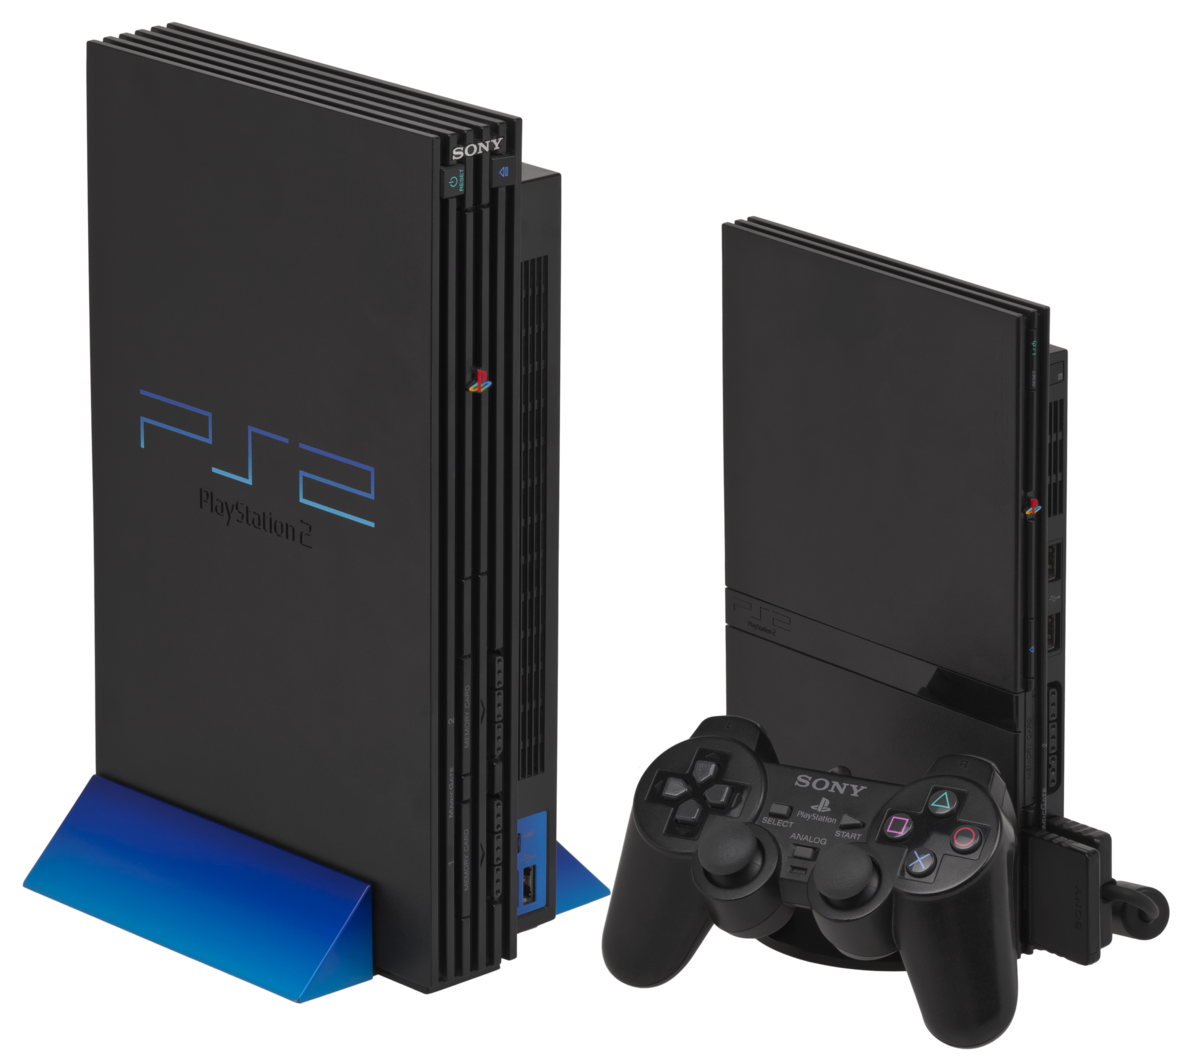 PlayStation 2 – Wikipédia, a enciclopédia livre